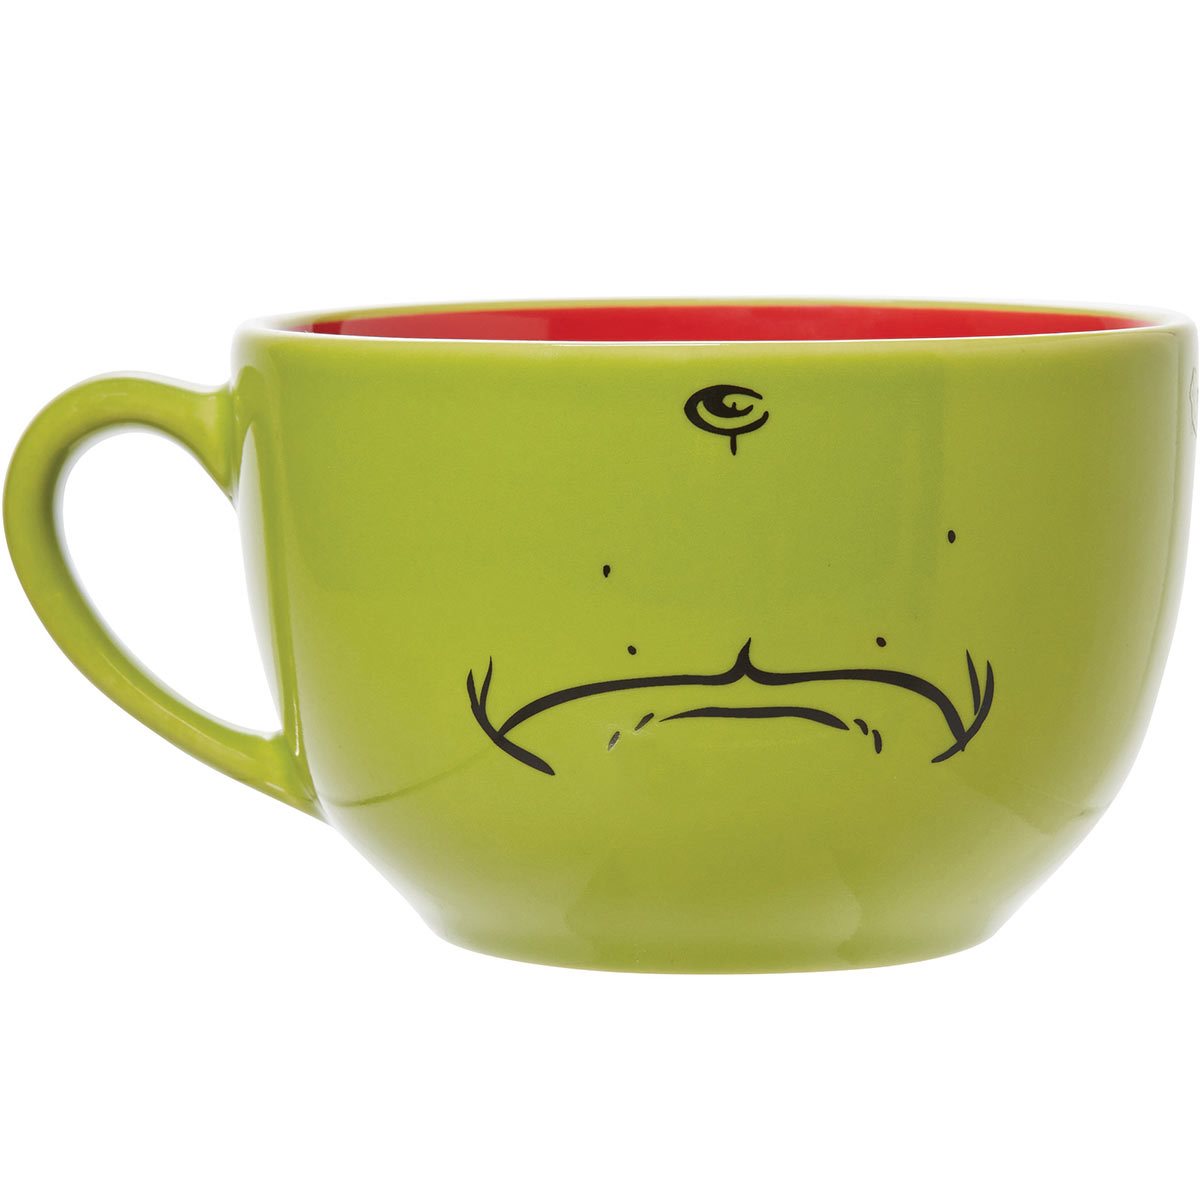 The Grinch Mug